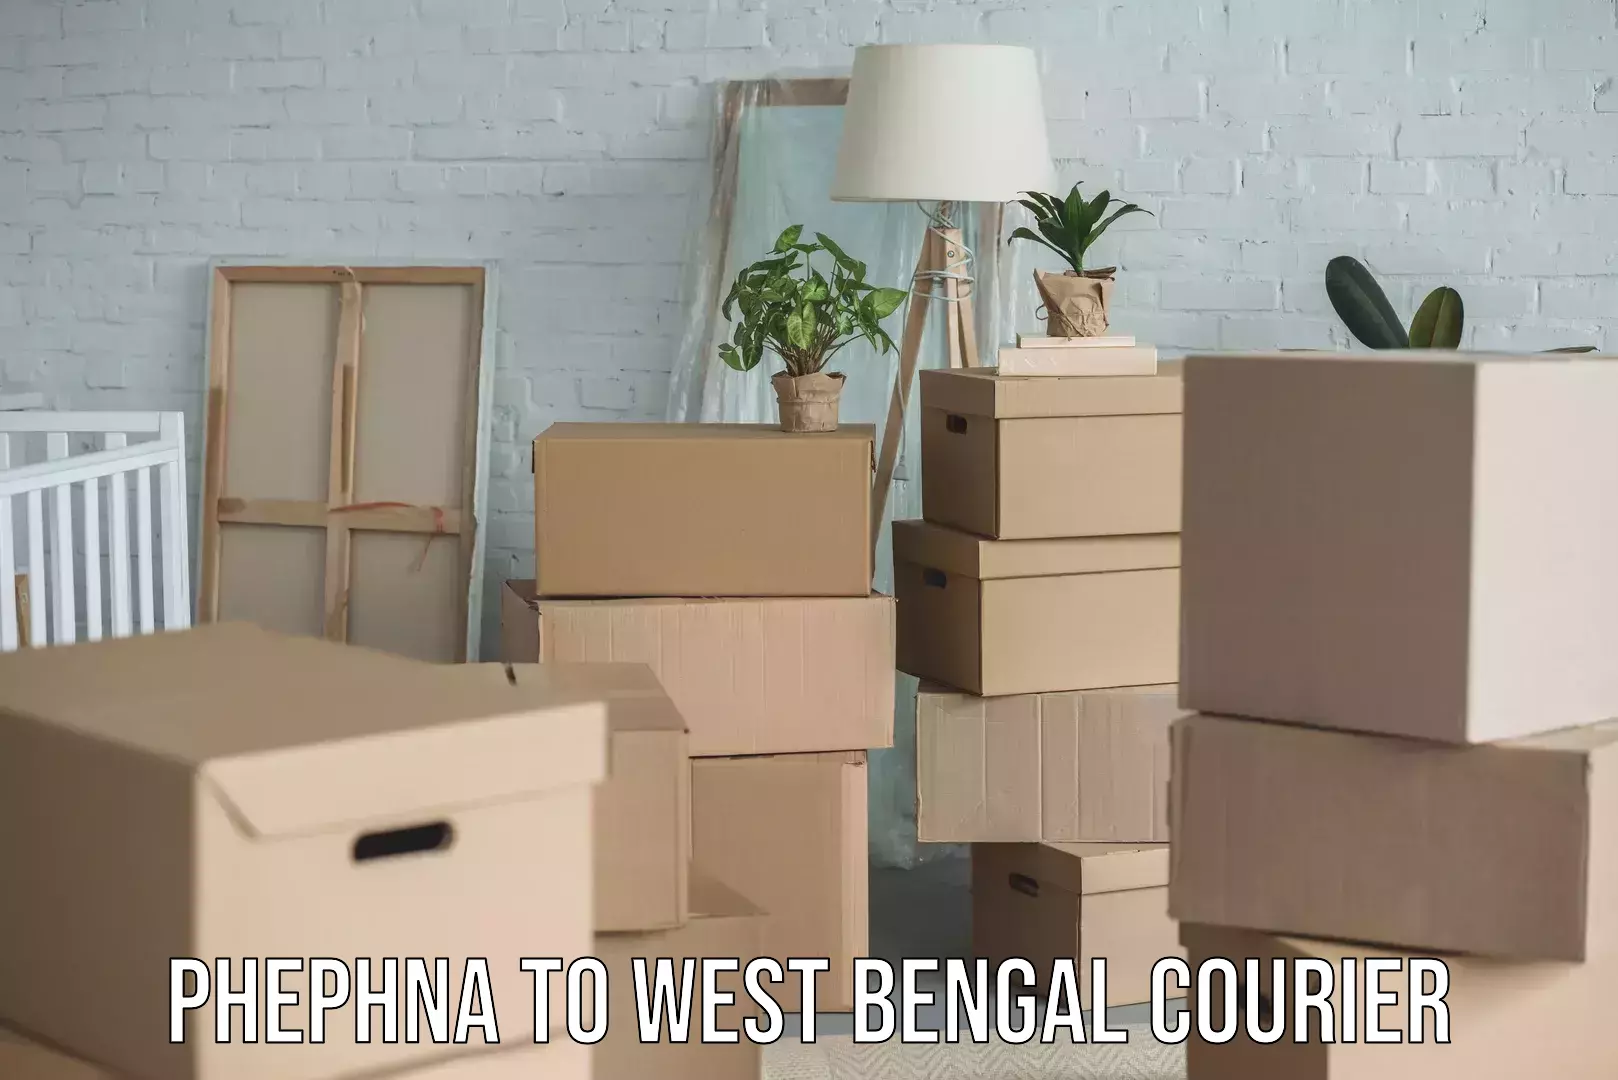 Home goods transport Phephna to West Bengal